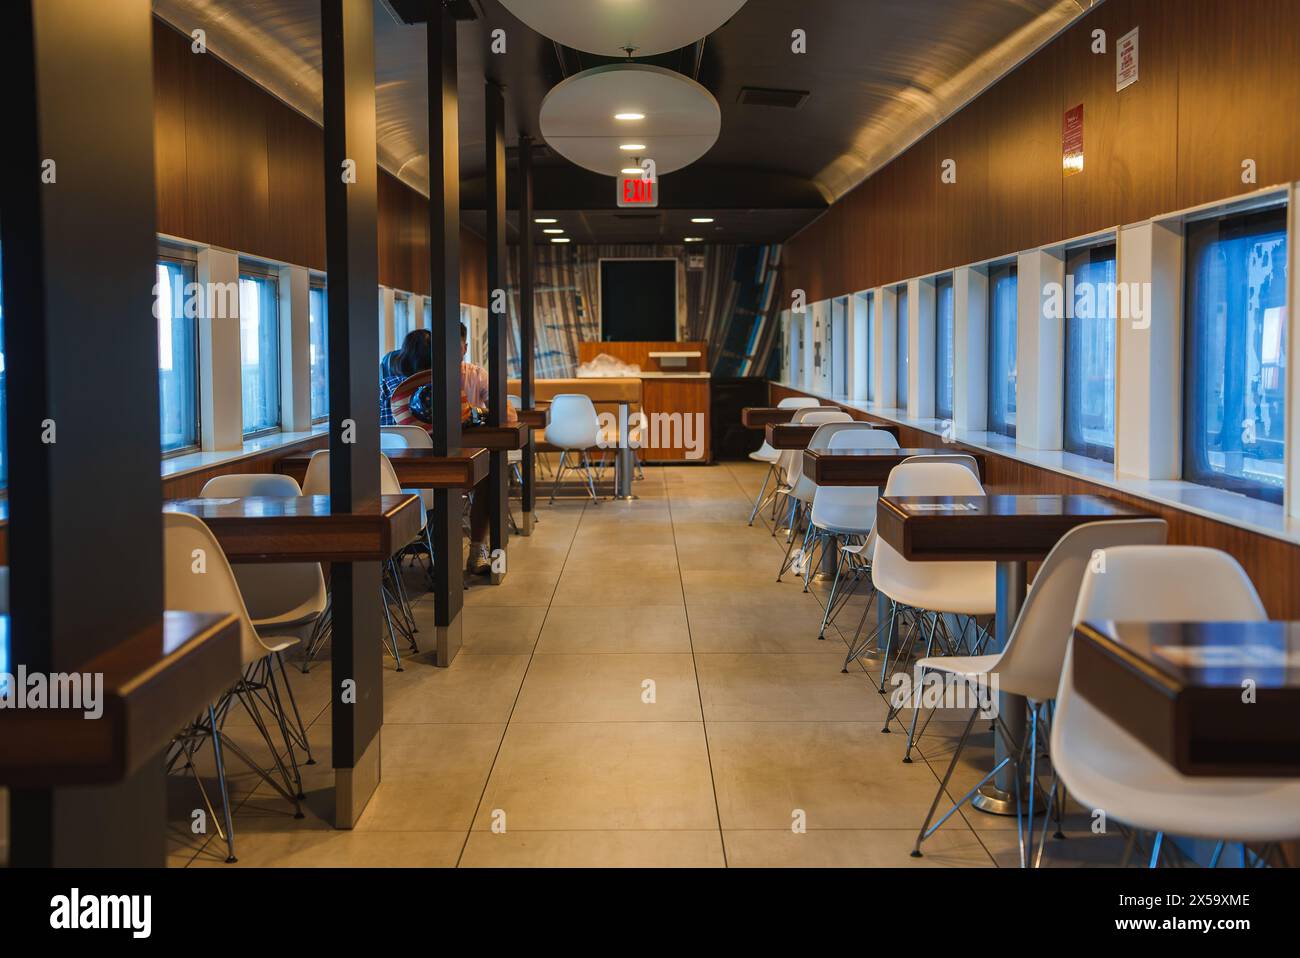 Intérieur de salle à manger à thème route 66 avec ambiance rétro moderne, Barstow, États-Unis Banque D'Images